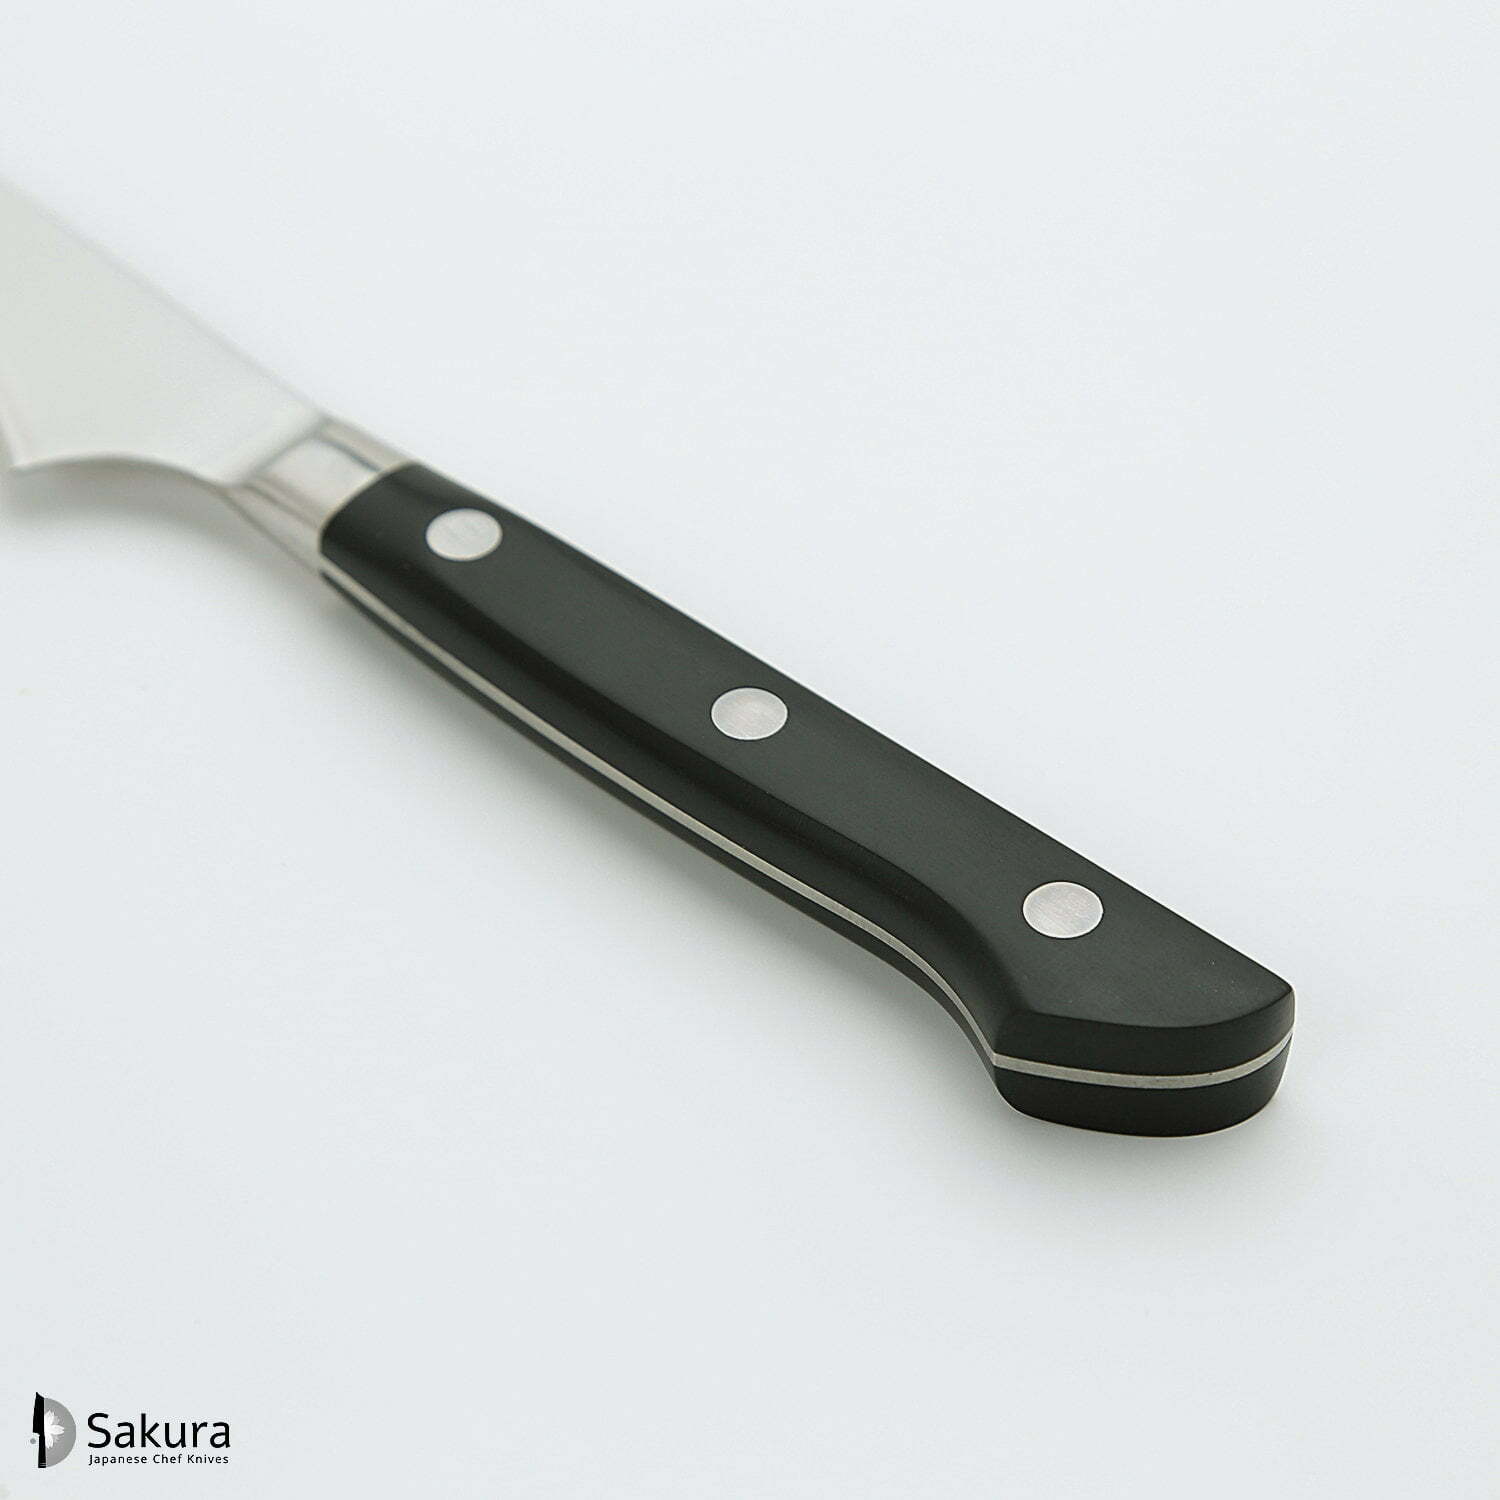 סכין עזר קטנה רב-תכליתית פֶּטִי טוּרְנֶה 70מ״מ מחוזקת 3 שכבות: פלדת פחמן יפנית VG-10 עטופה פלדת אל-חלד גימור מט מלוטש טוג׳ירו יפן